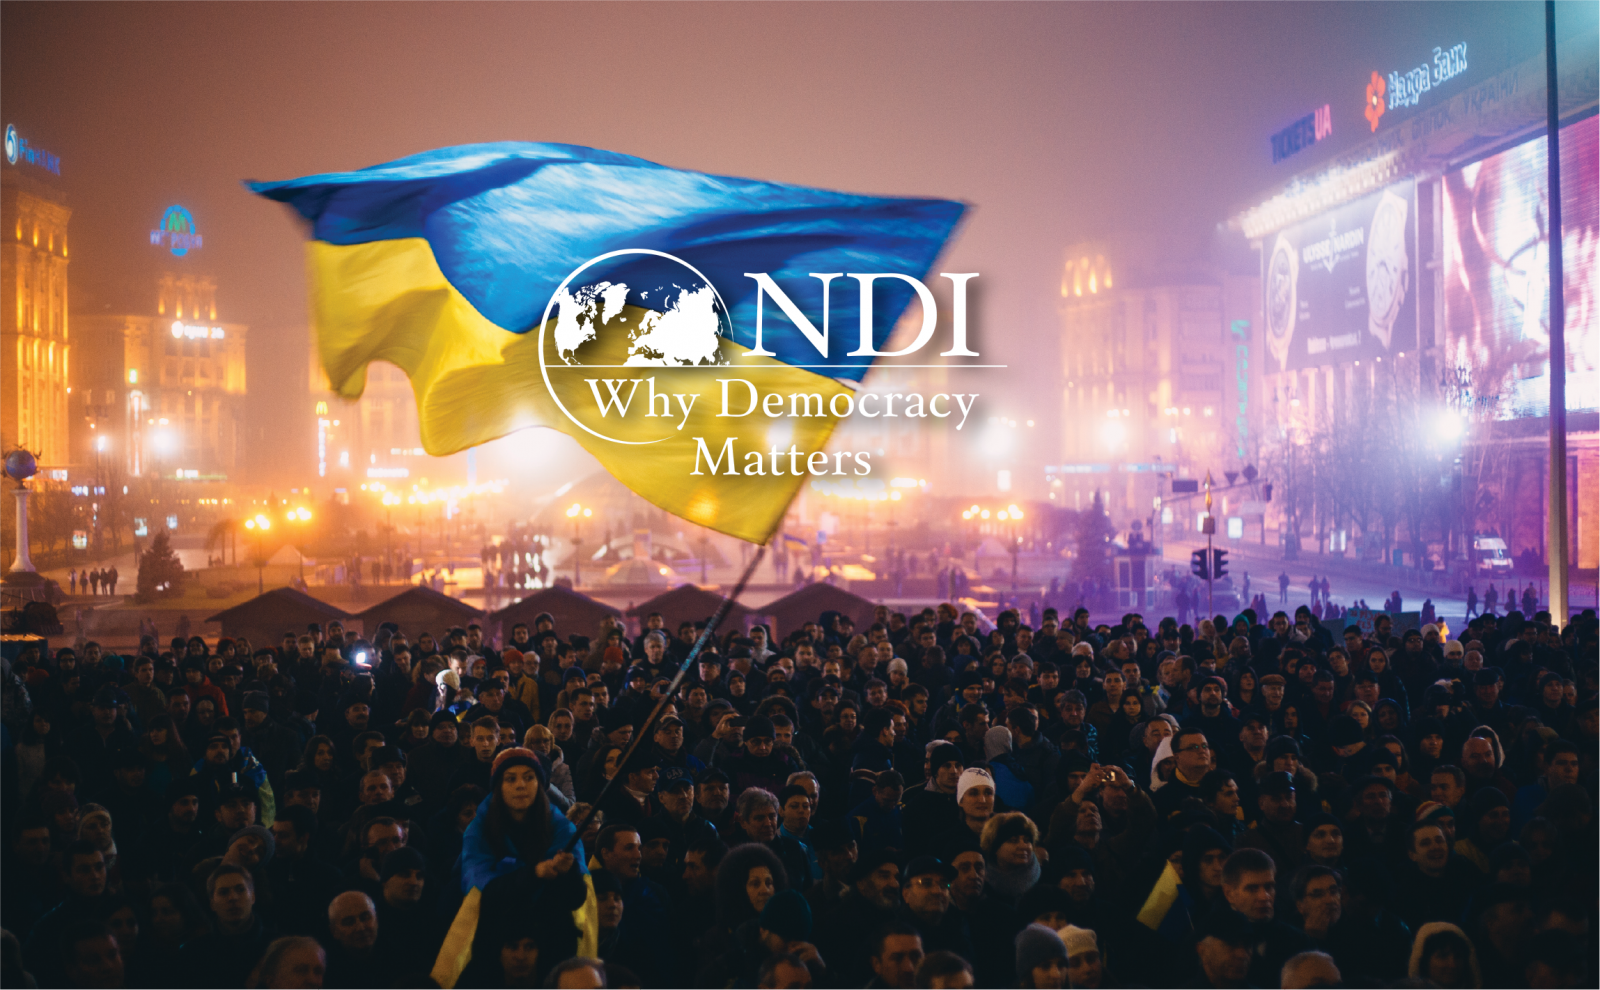 NDI - Ukraine Program to Resist Authoritarianism 